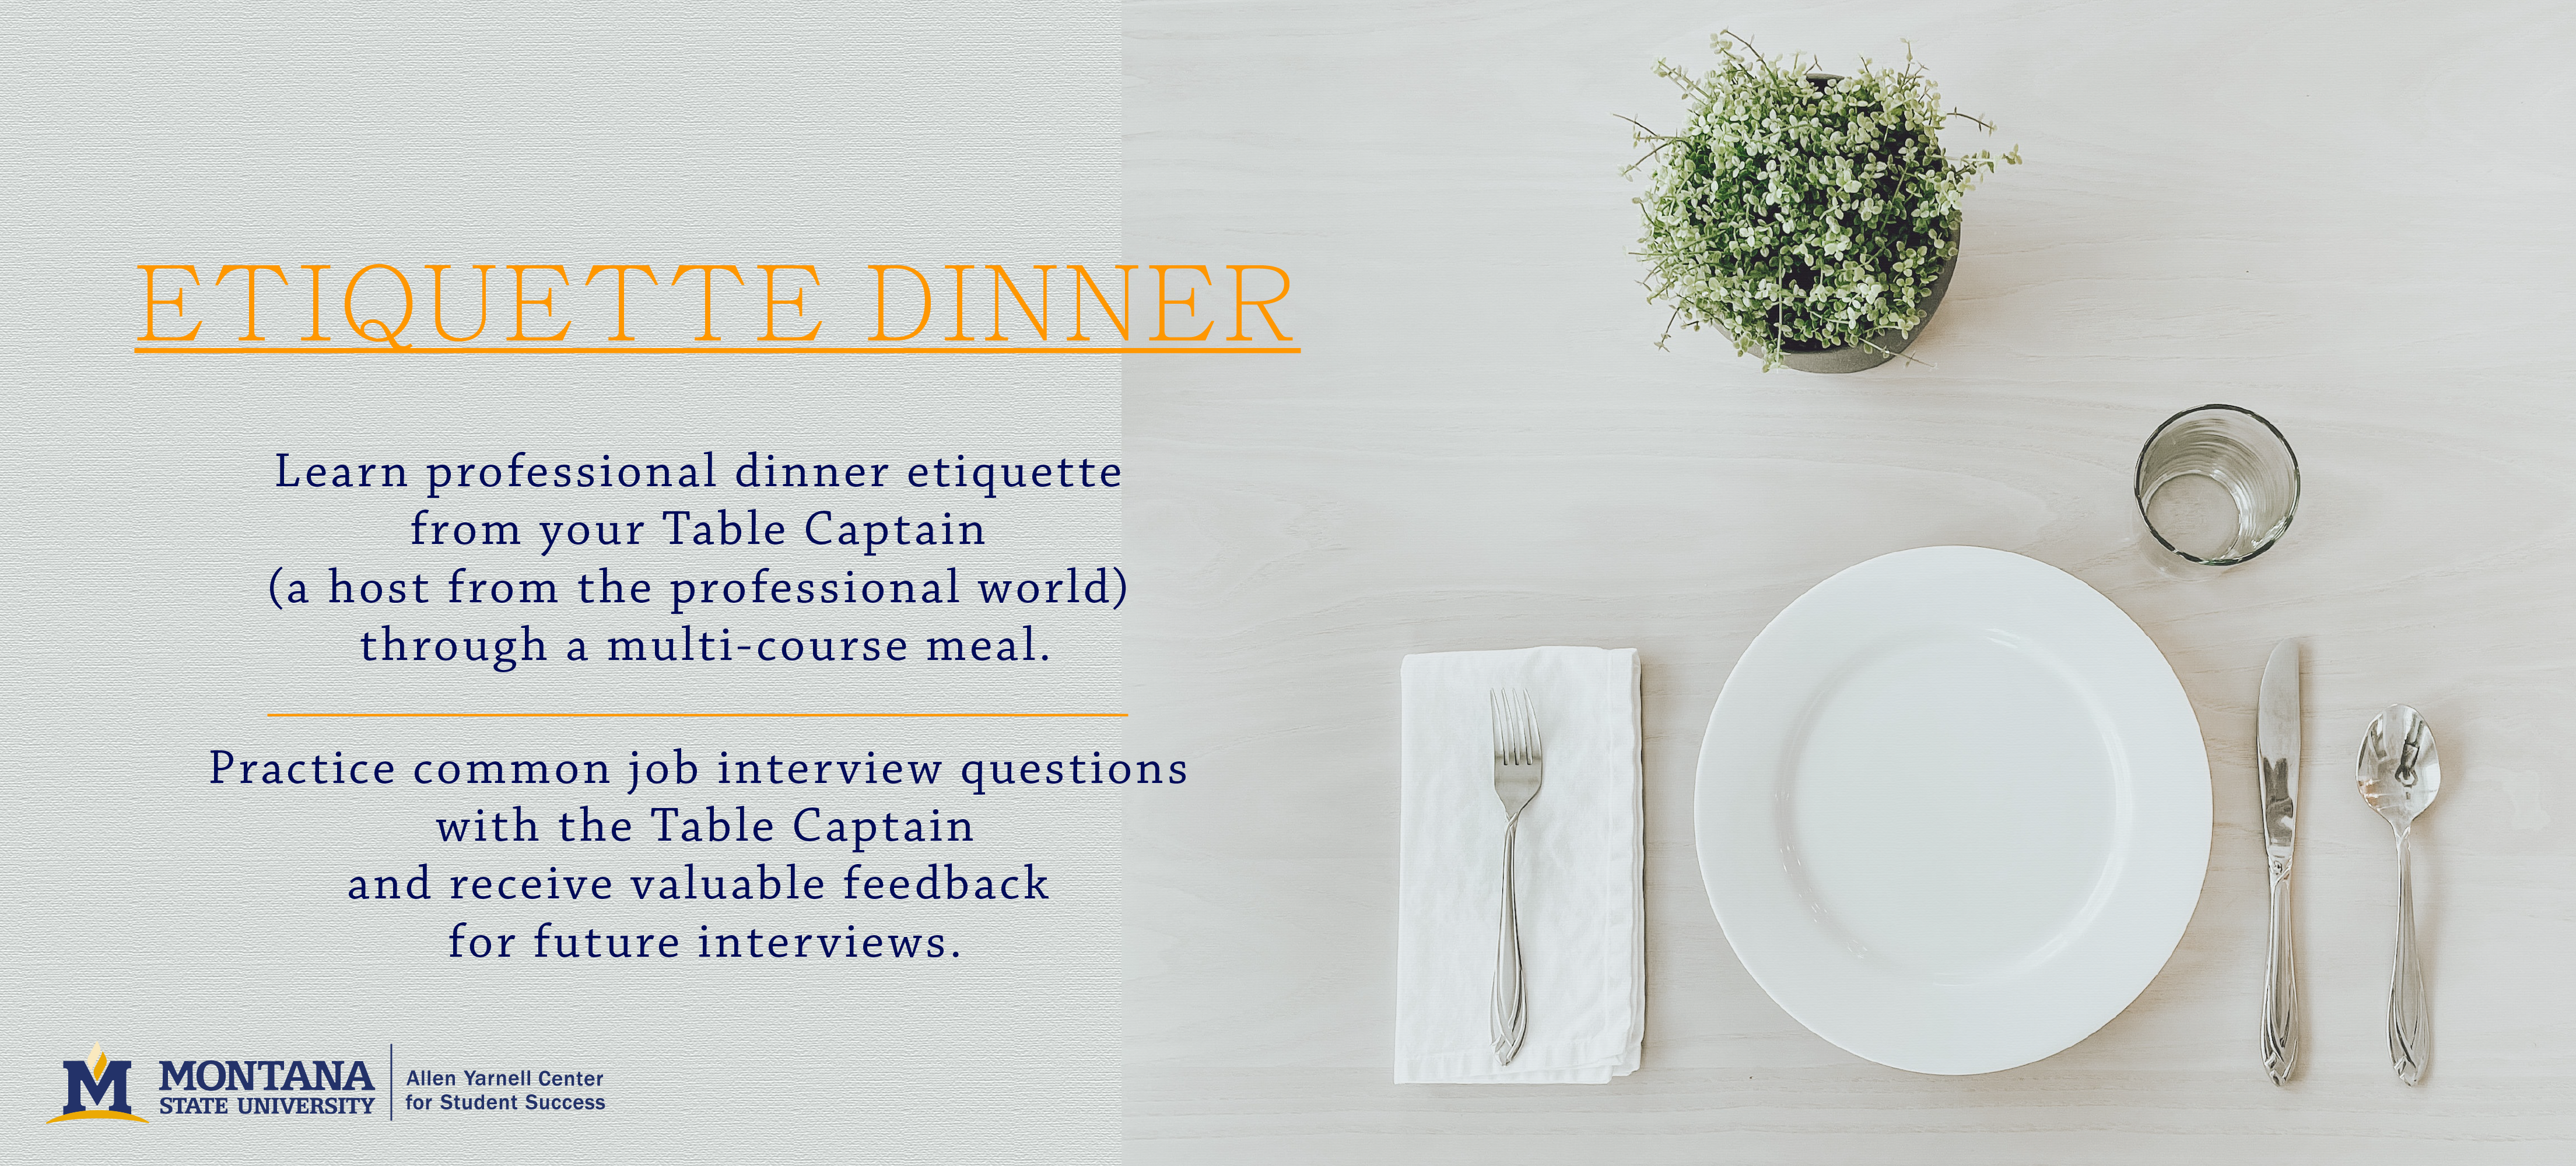 Etiquette Dinner - Allen Yarnell Center for Student Success